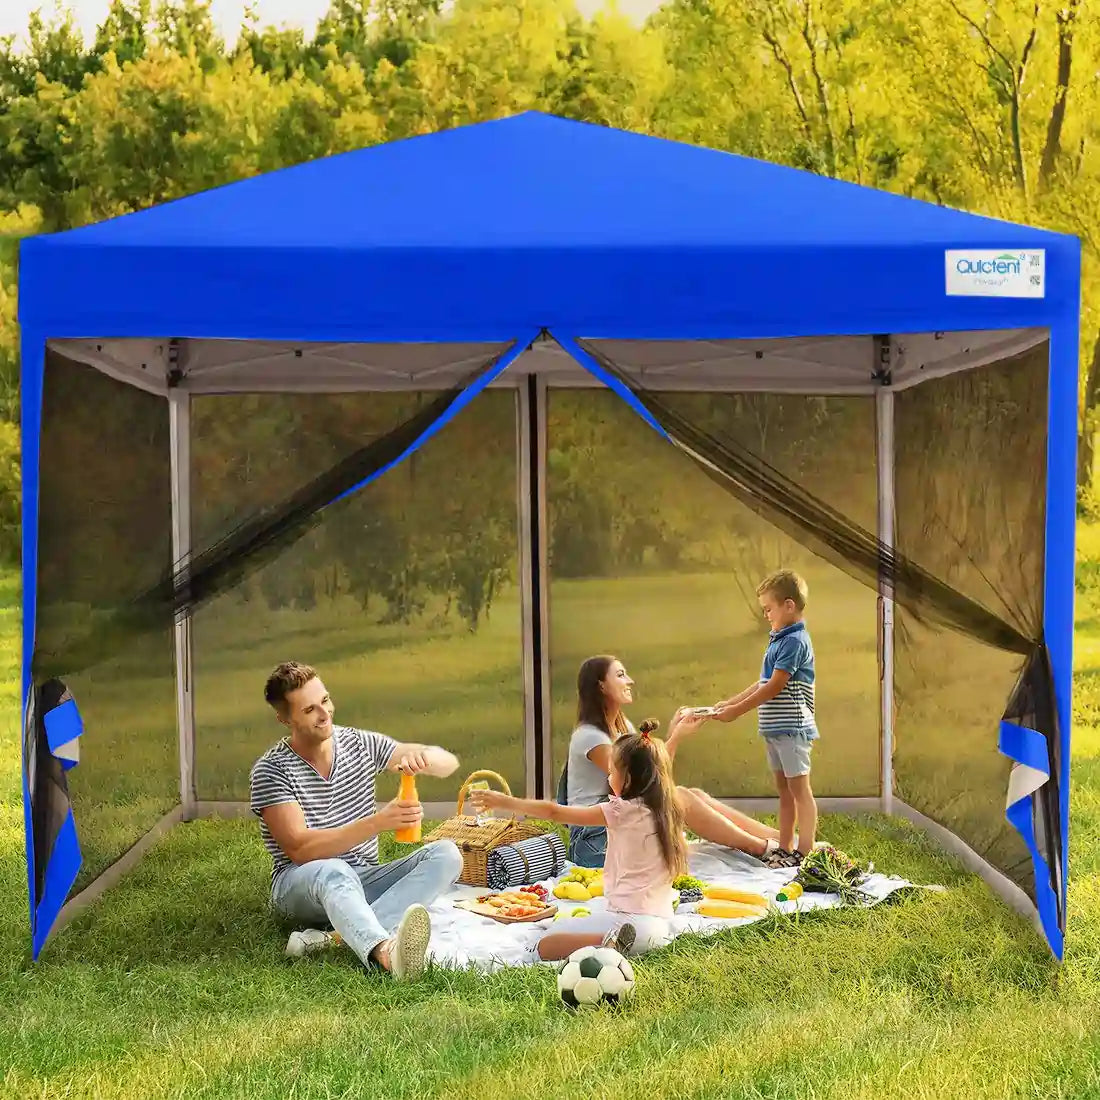 Blue mesh canopy tent#color_royal blue